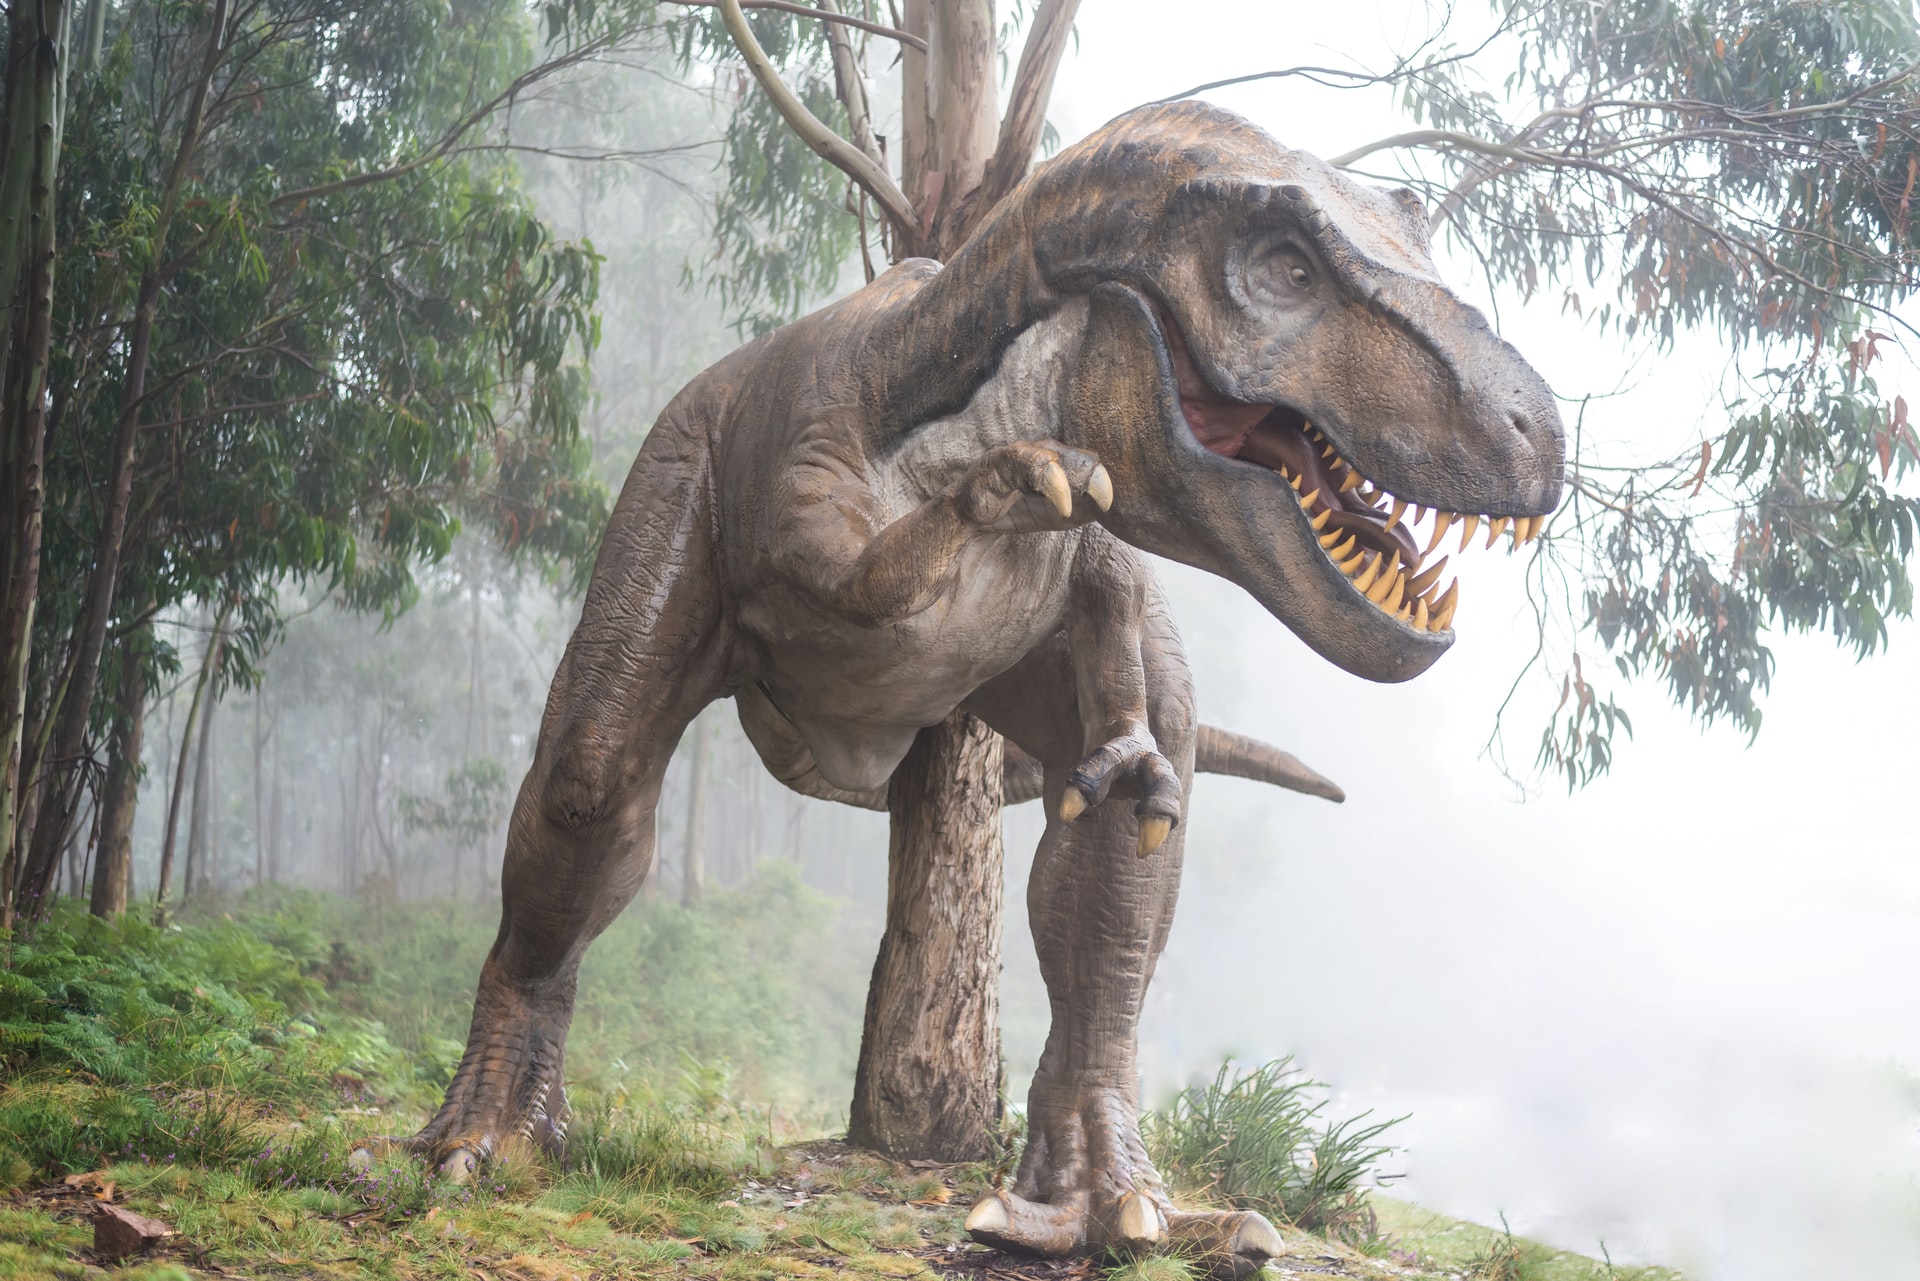 Tiranosaurios rex machos se enfrentaban golpeándose las cabezas en batallas  por parejas o territorios, revela investigación